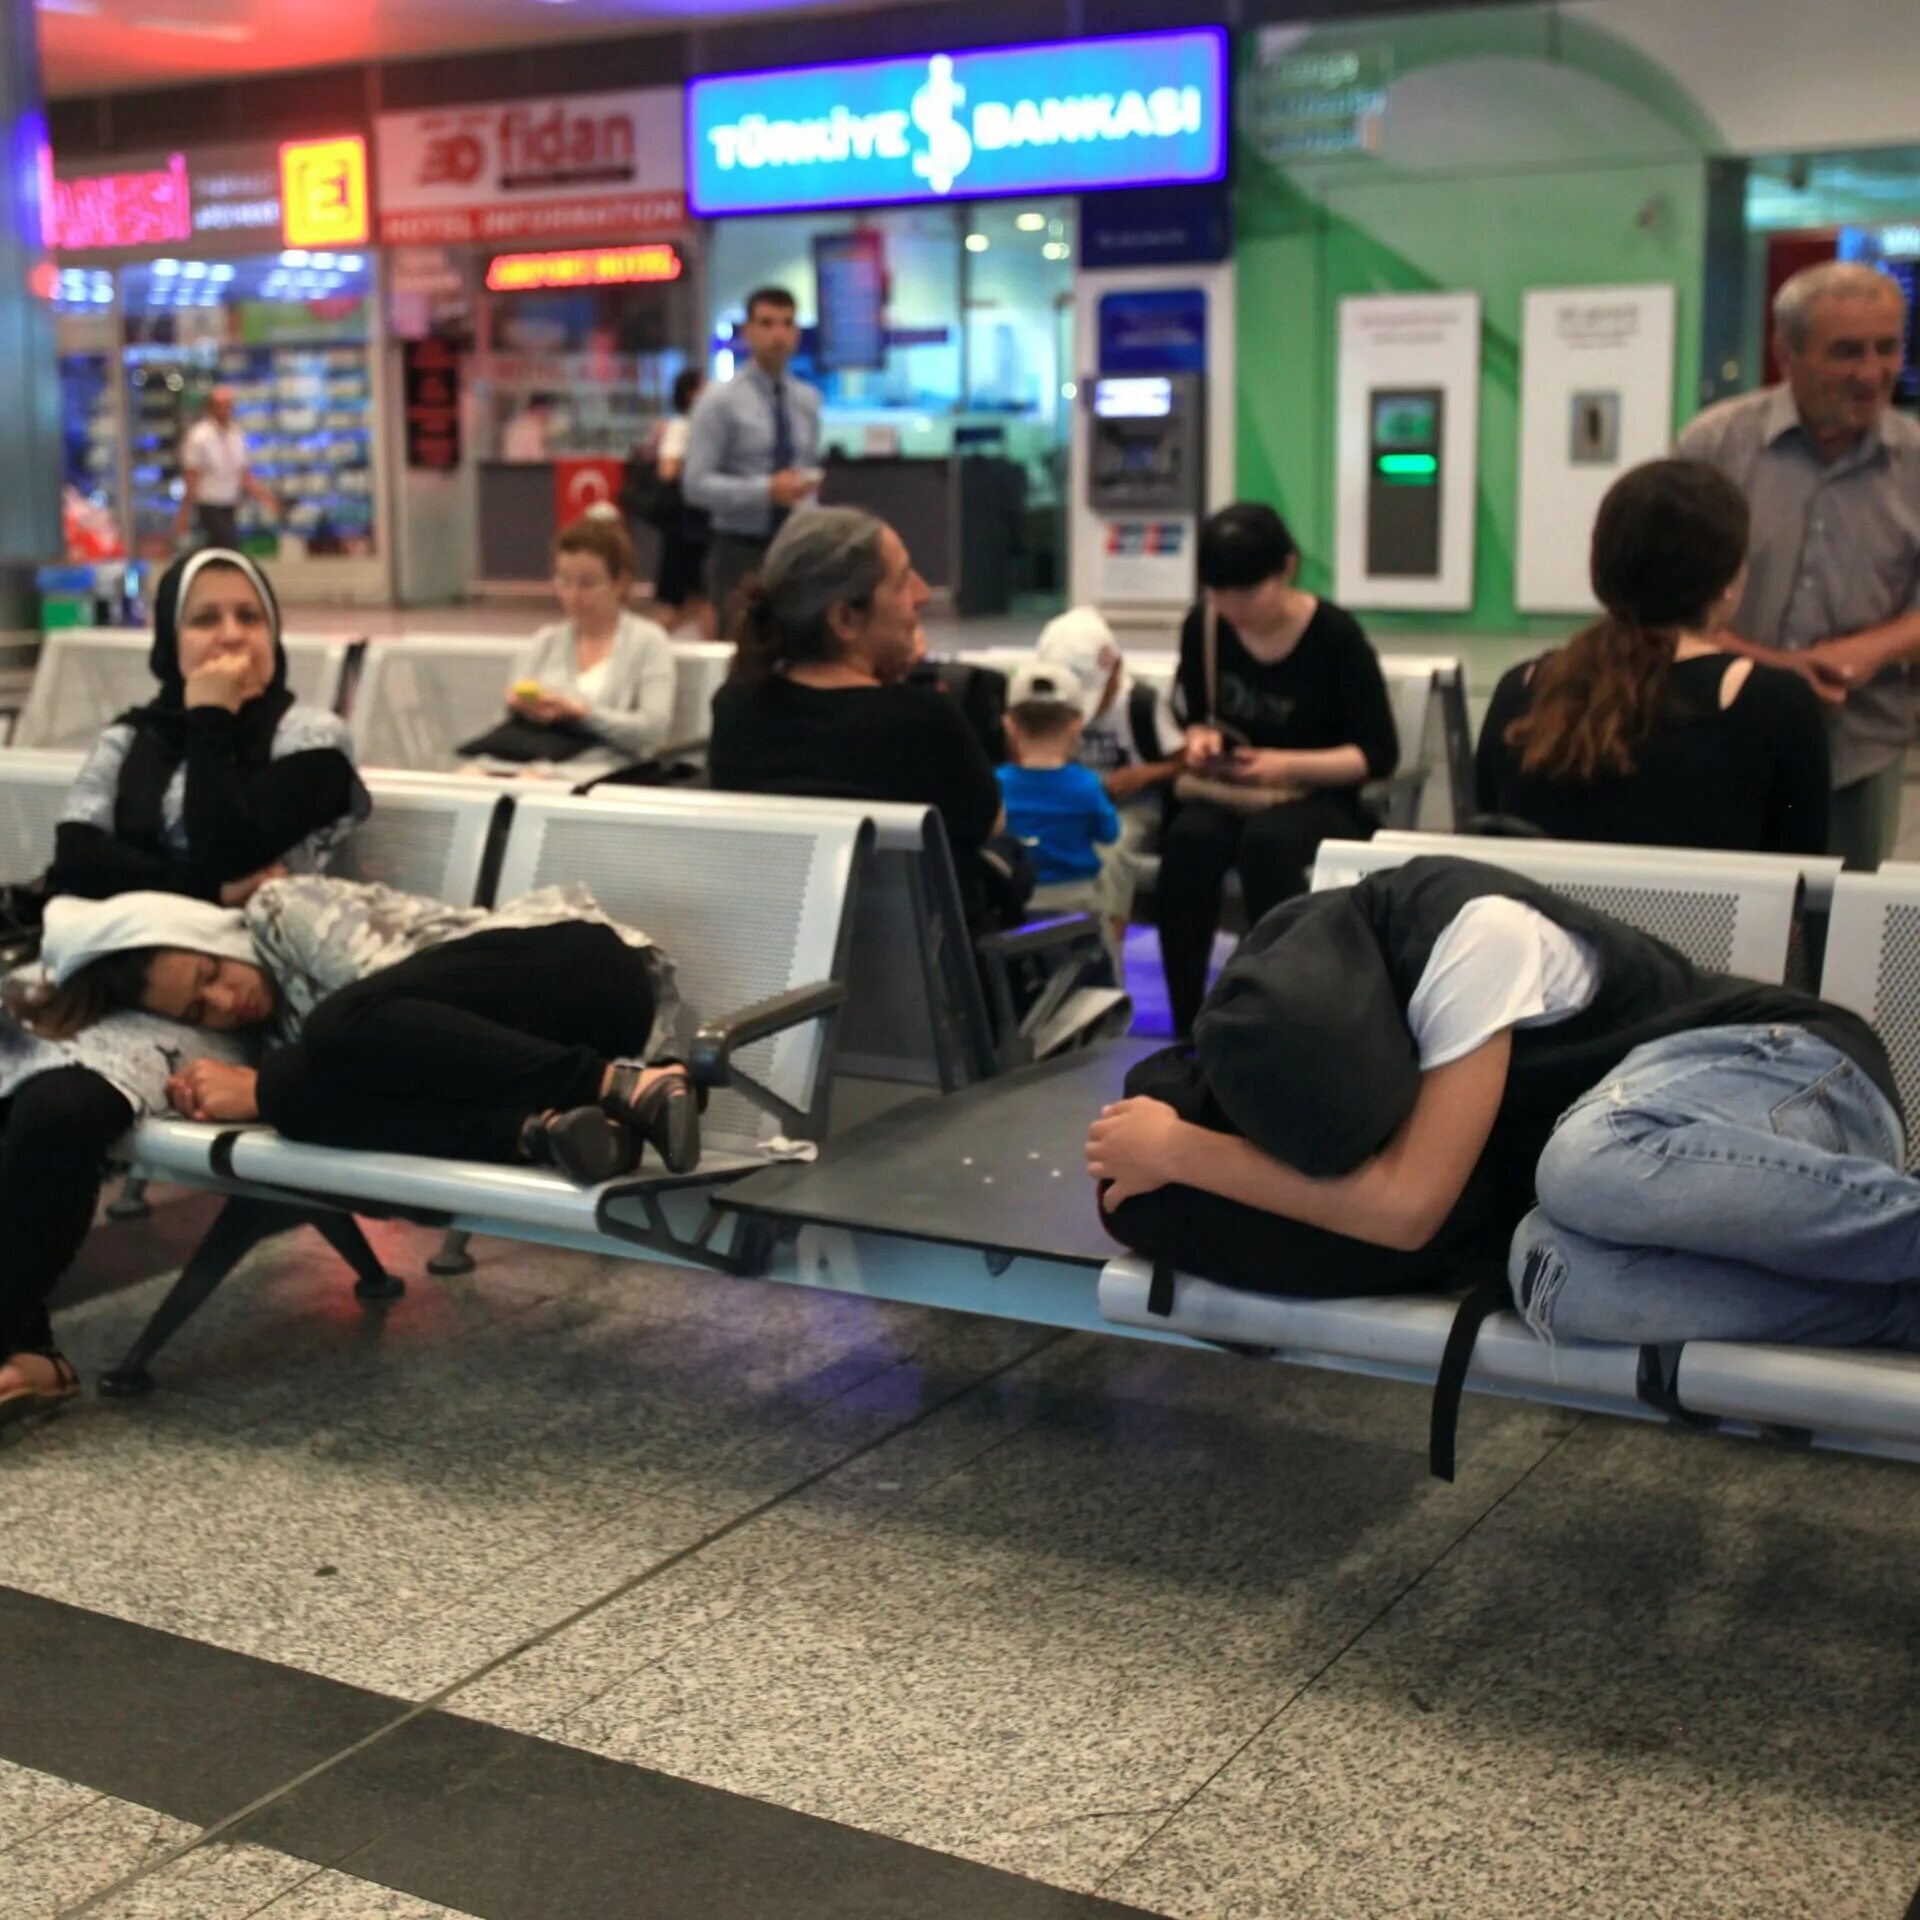 Поспать в шереметьево. Ситуация в стамбульском аэропорту. Ситуации в аэропорту. Обстановка в аэропорту Стамбула. Ожидание в аэропорту в Стамбуле бизнес.